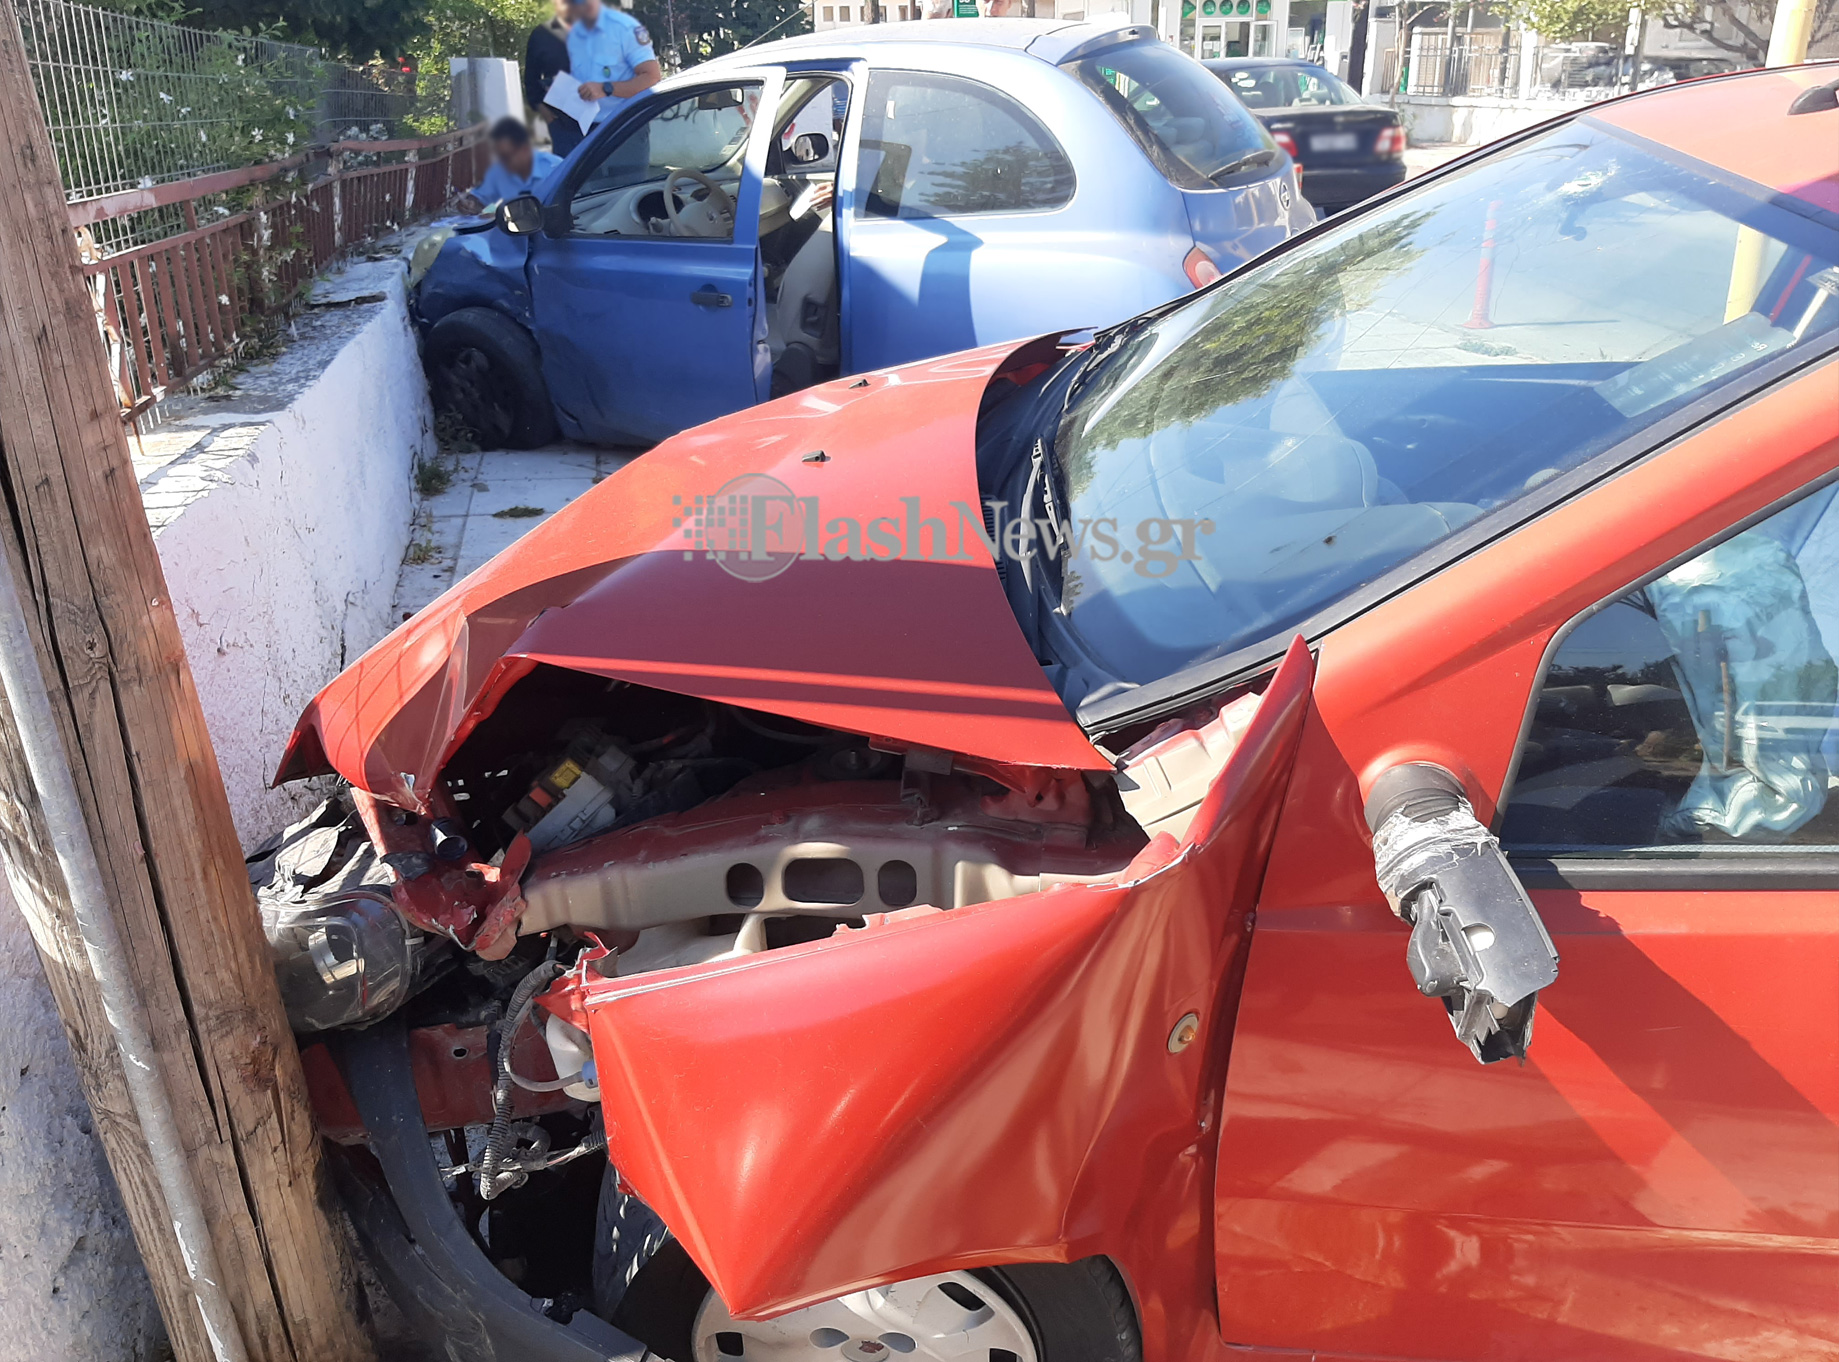 Σύγκρουση δύο αυτοκινήτων στα Χανιά – Το ένα κατέληξε σε μαντρότοιχο σπιτιού (φωτο)